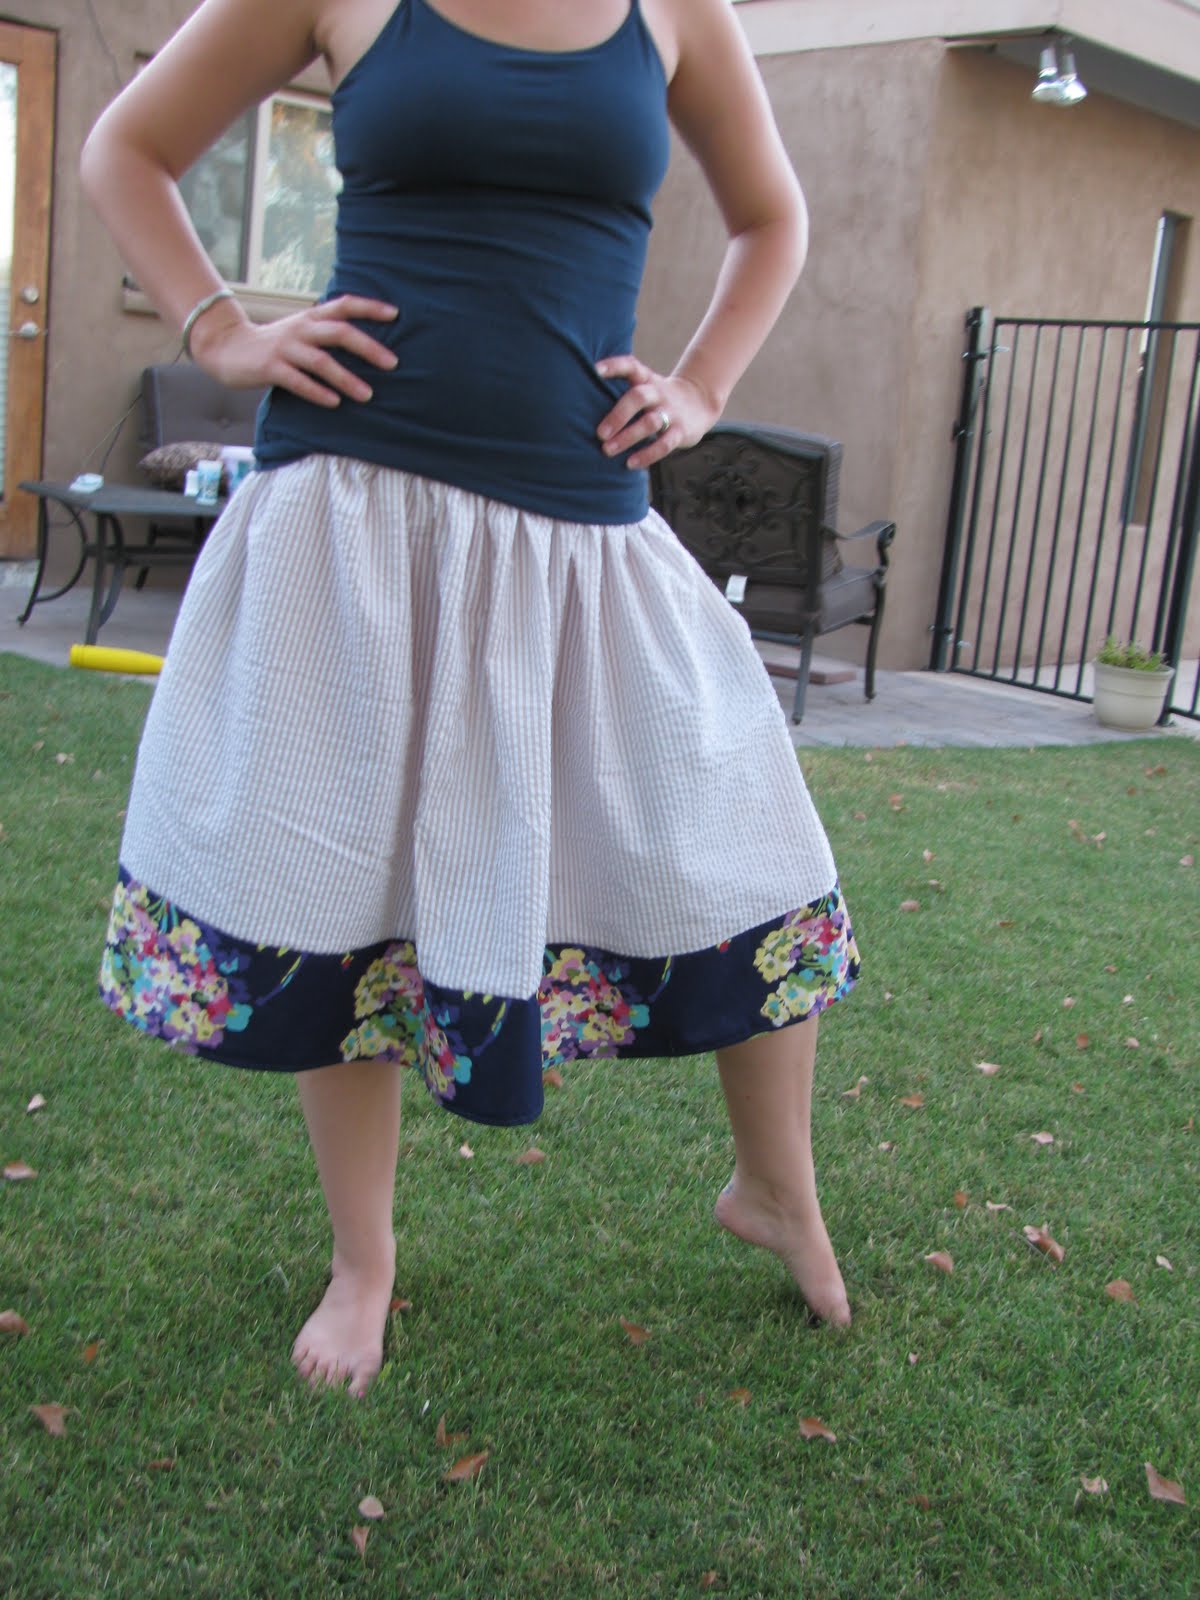 Mama's Hustling: Skirt Week Entries!